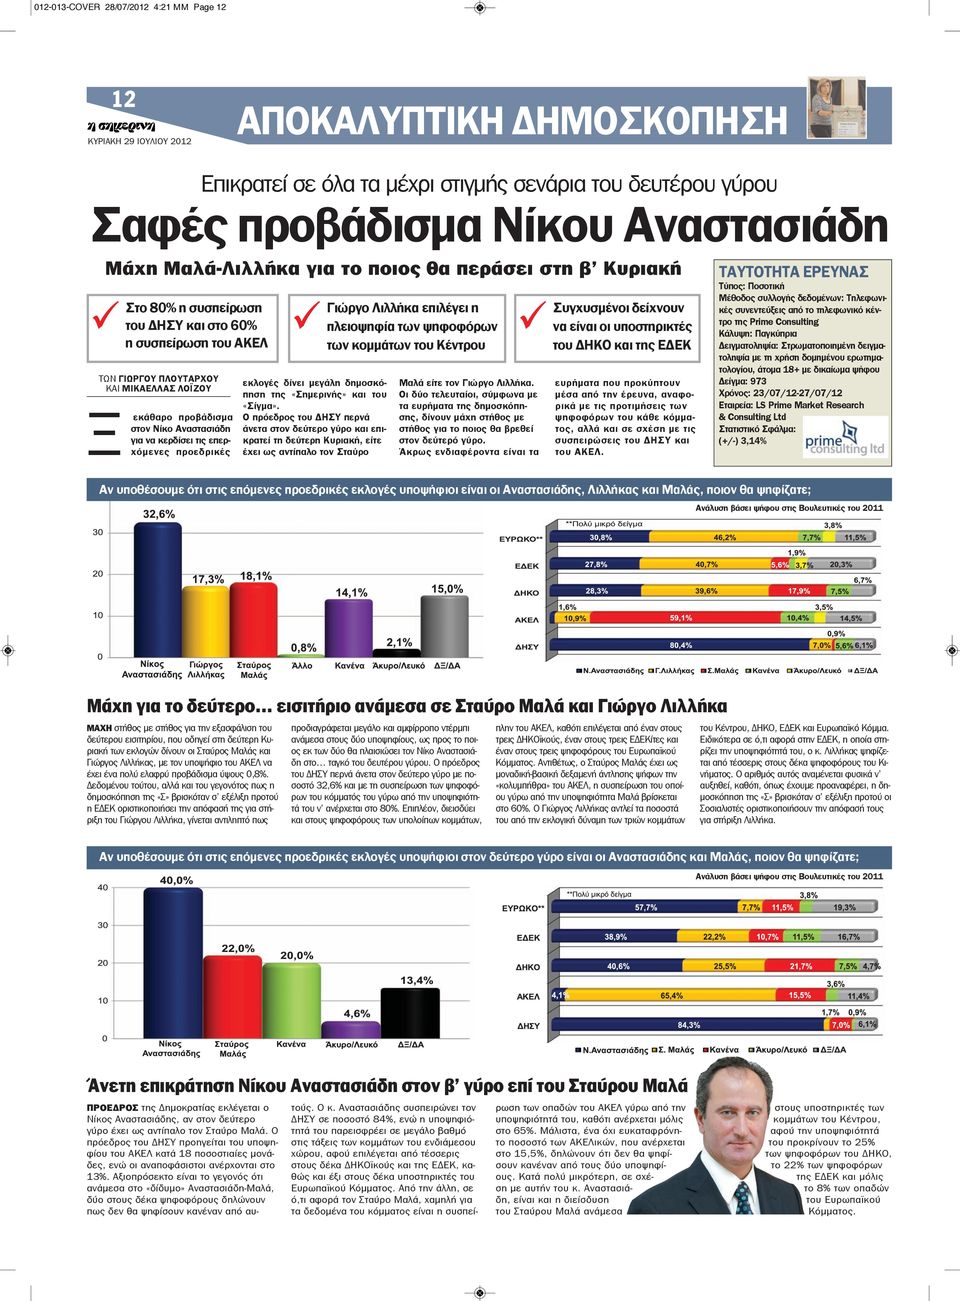 Αναστασιάδη για να κερδίσει τις επερχόμενες προεδρικές εκλογές δίνει μεγάλη δημοσκόπηση της «Σημερινής» και του «Σίγμα».